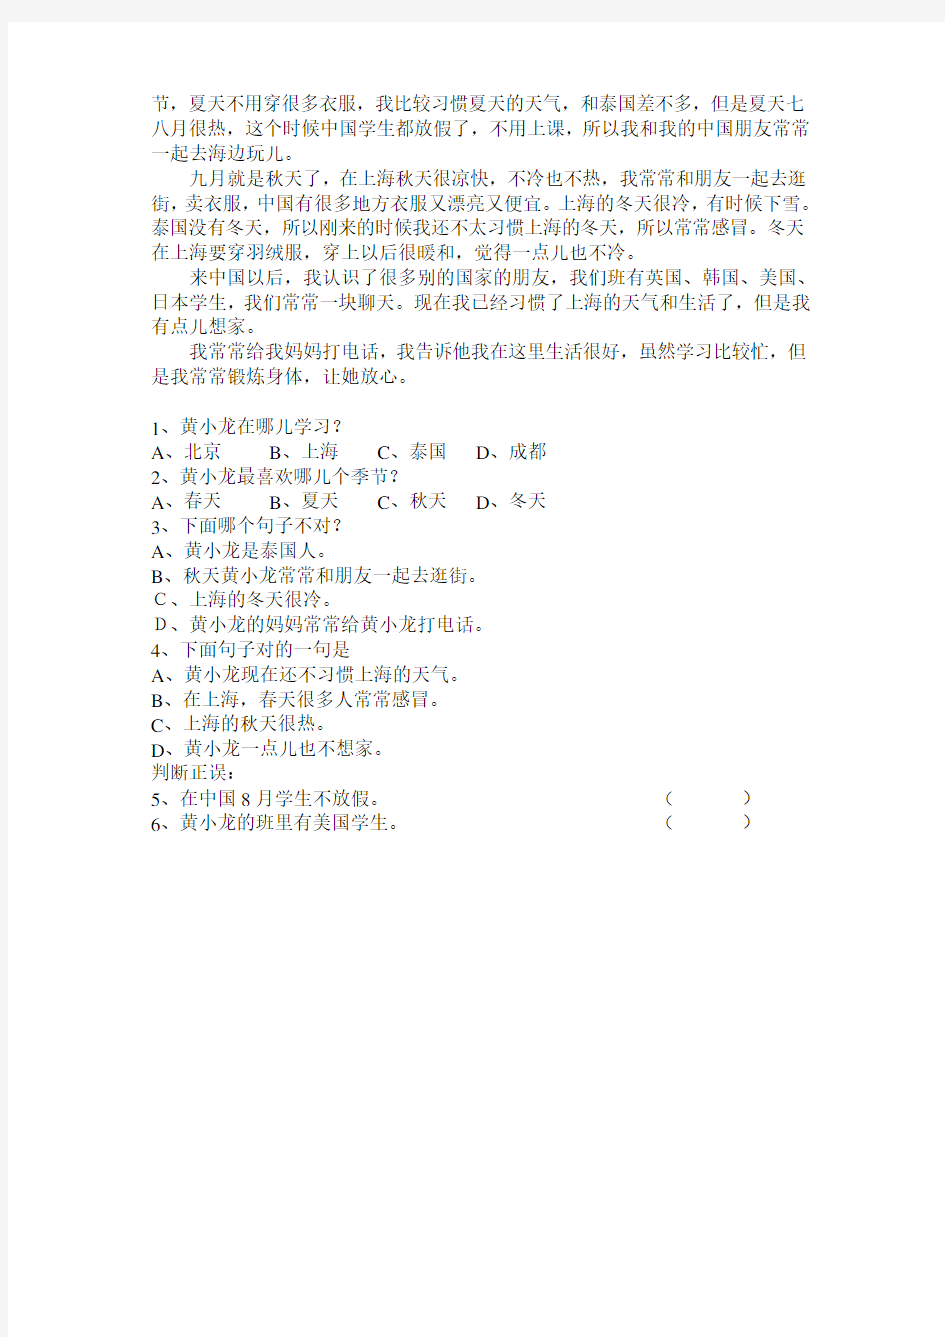 初级汉语口语学生考试